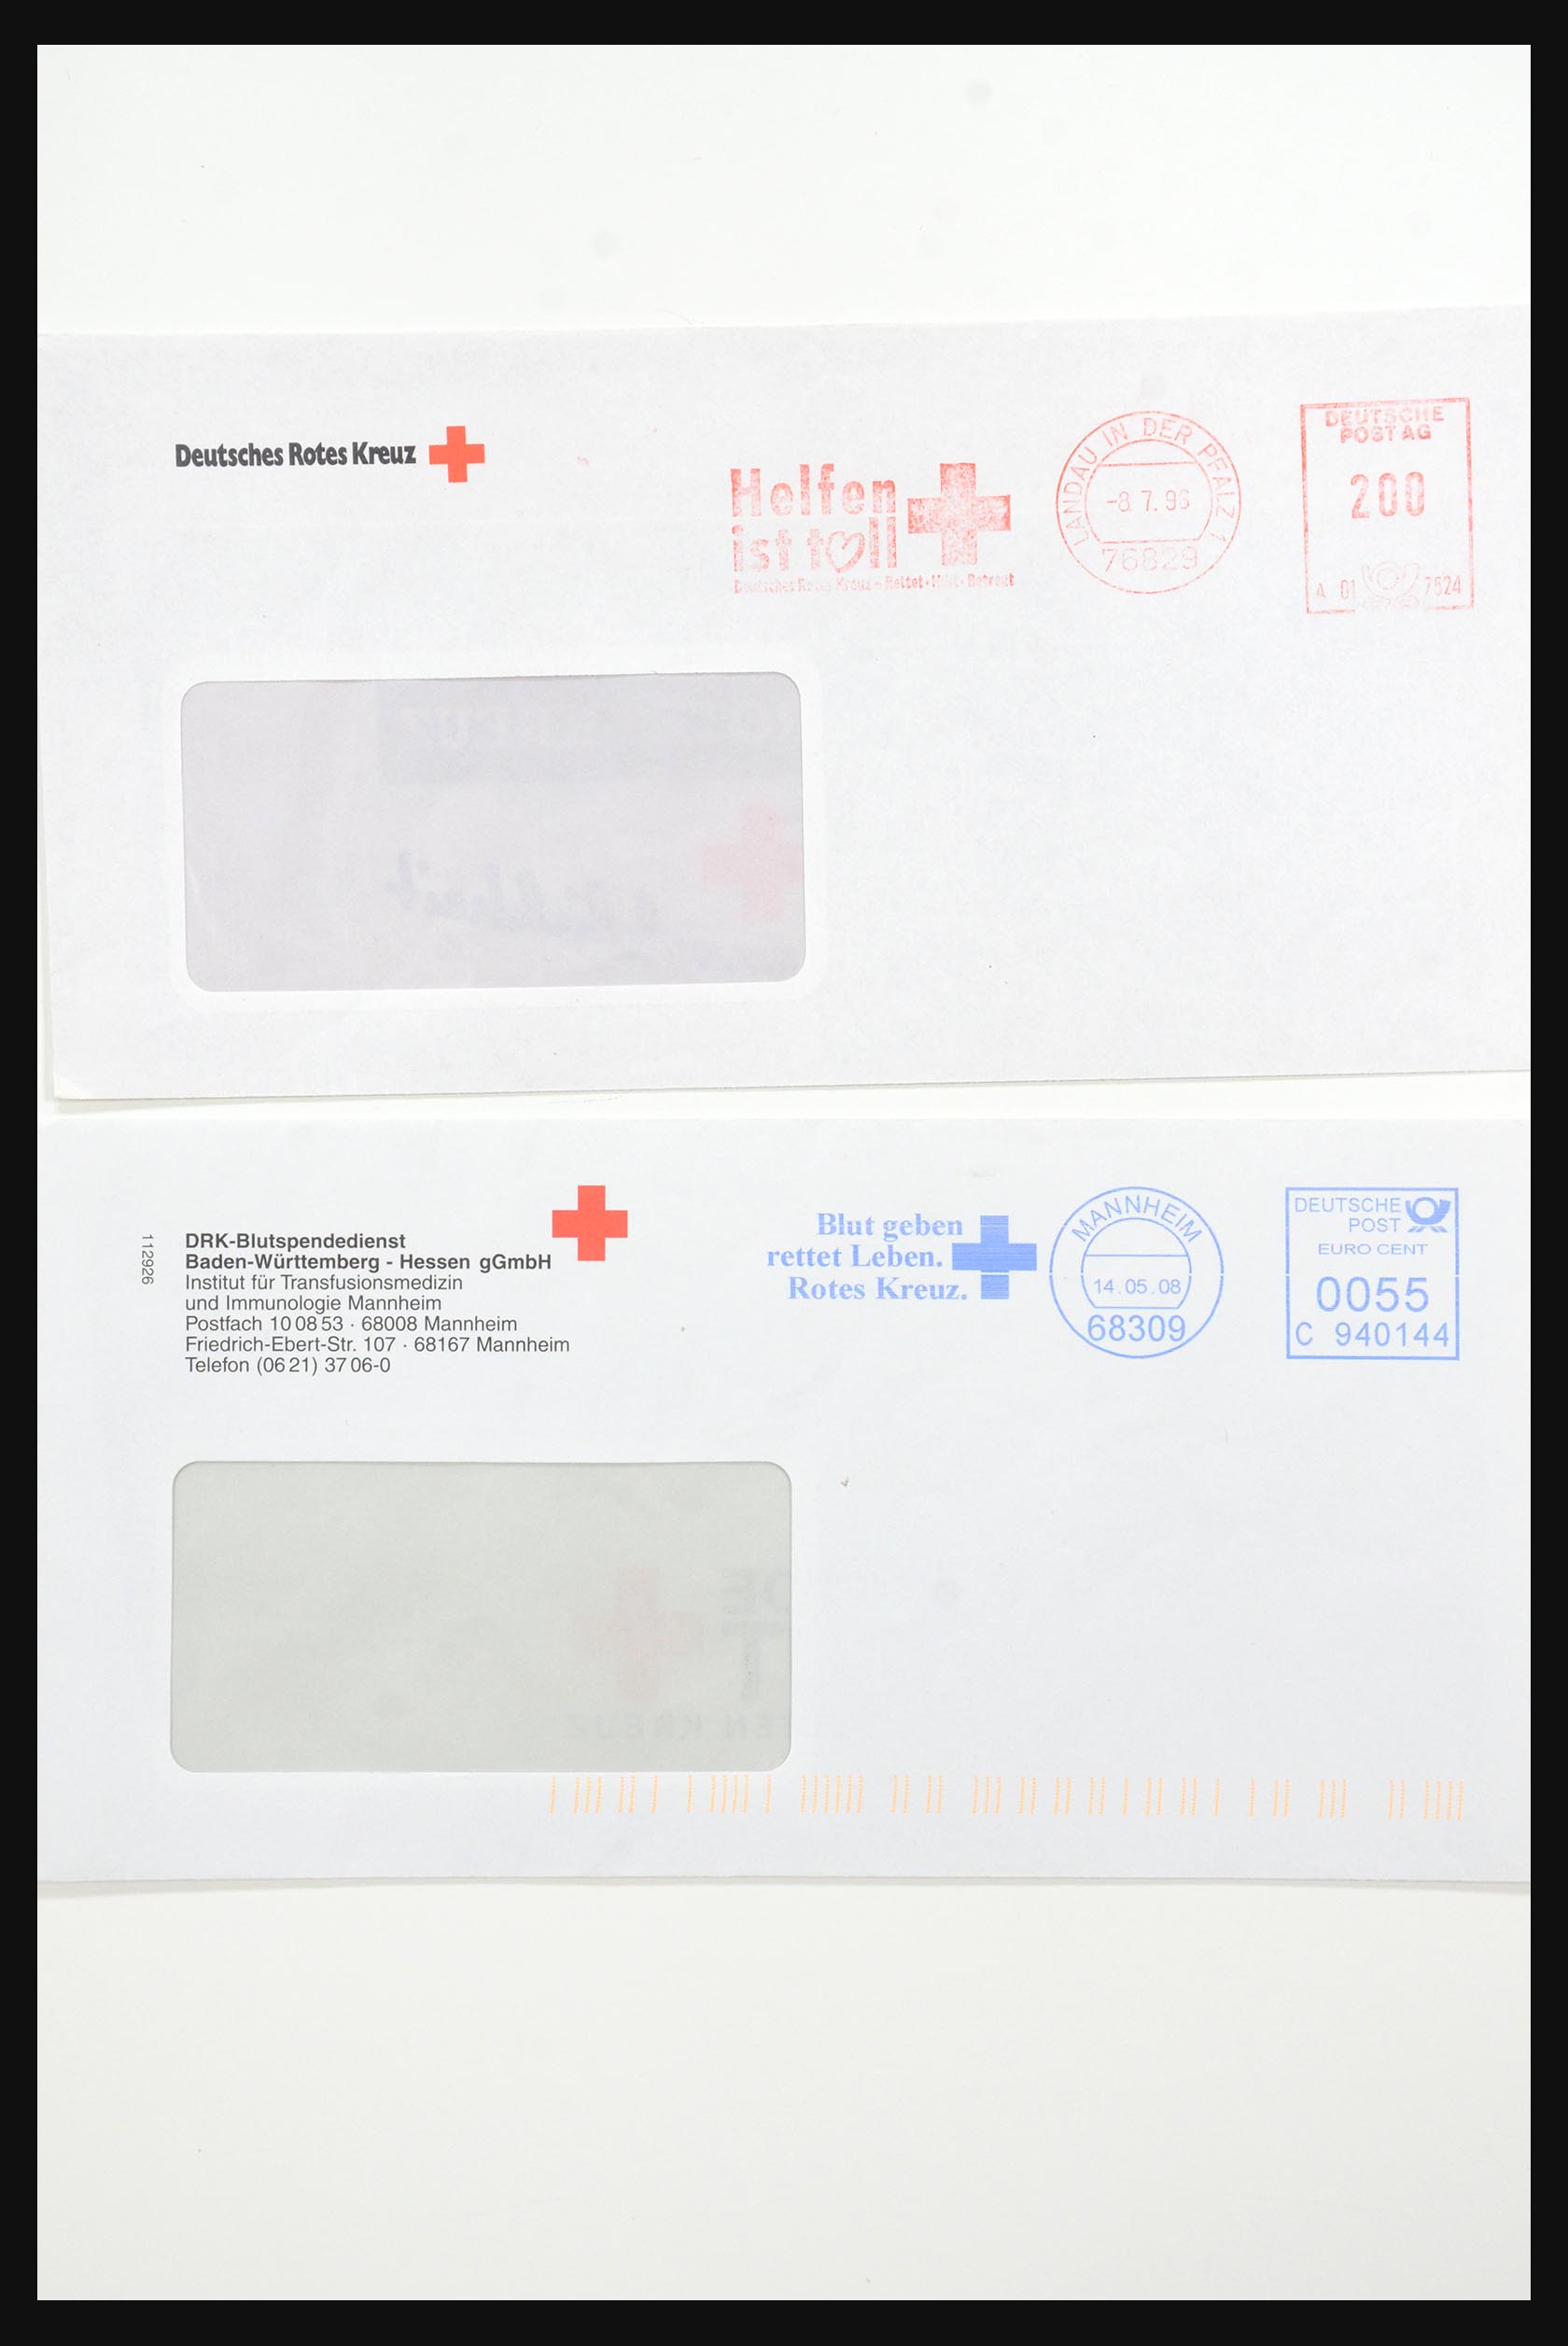 31365 1076 - 31365 Rode kruis brieven 1905-1975.